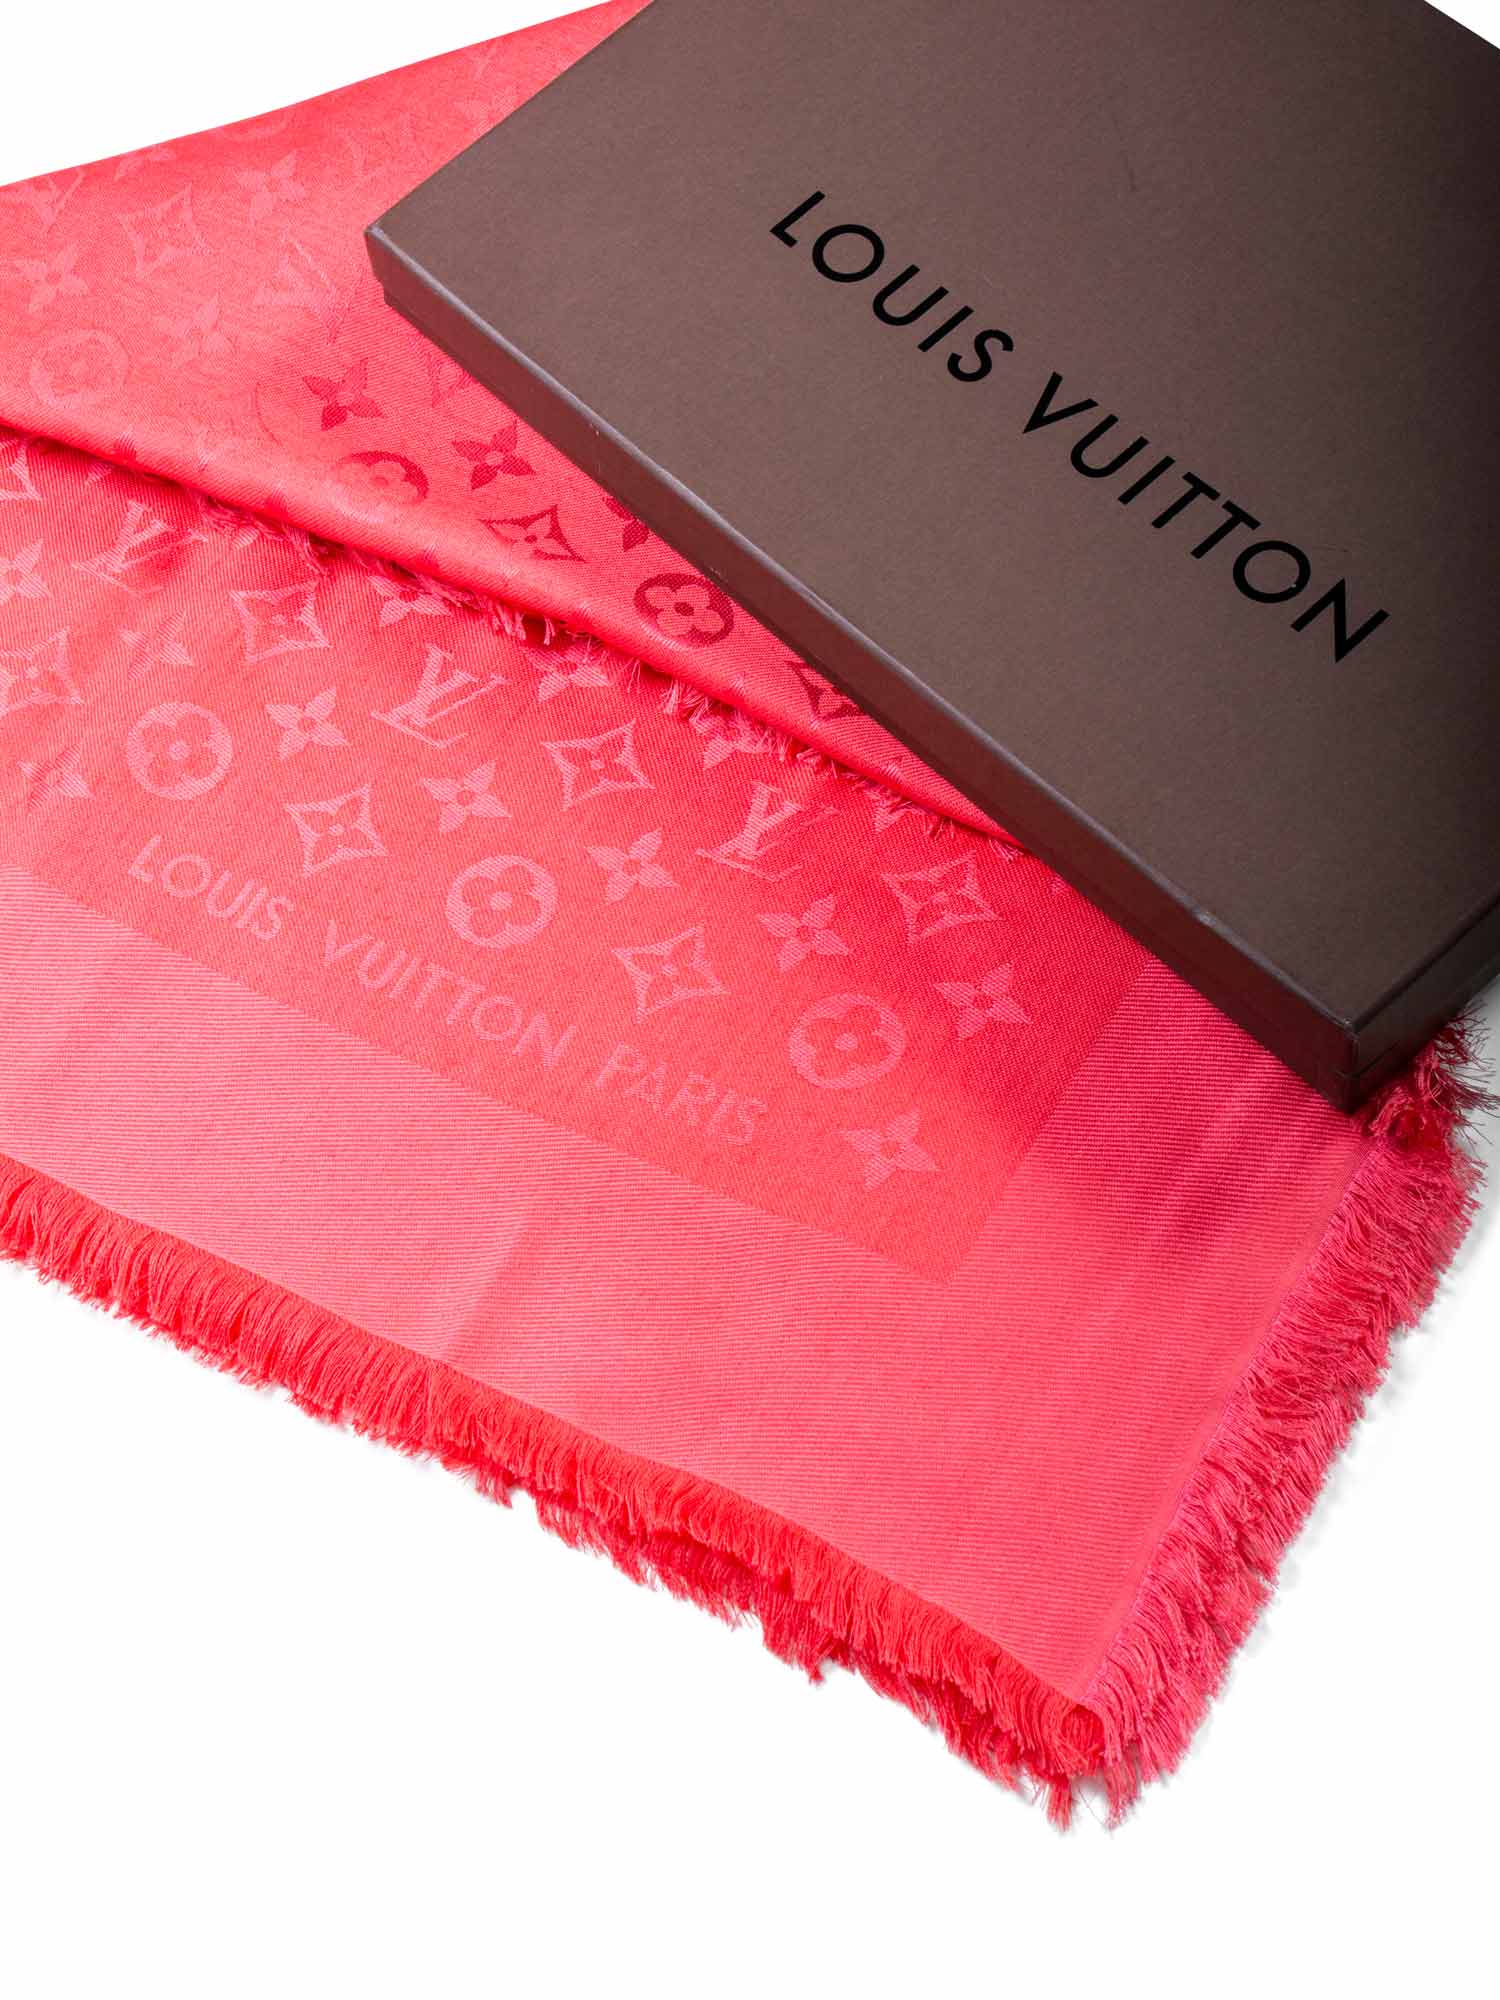 Louis Vuitton Silk Wool Monogram Shawl Pink-designer resale